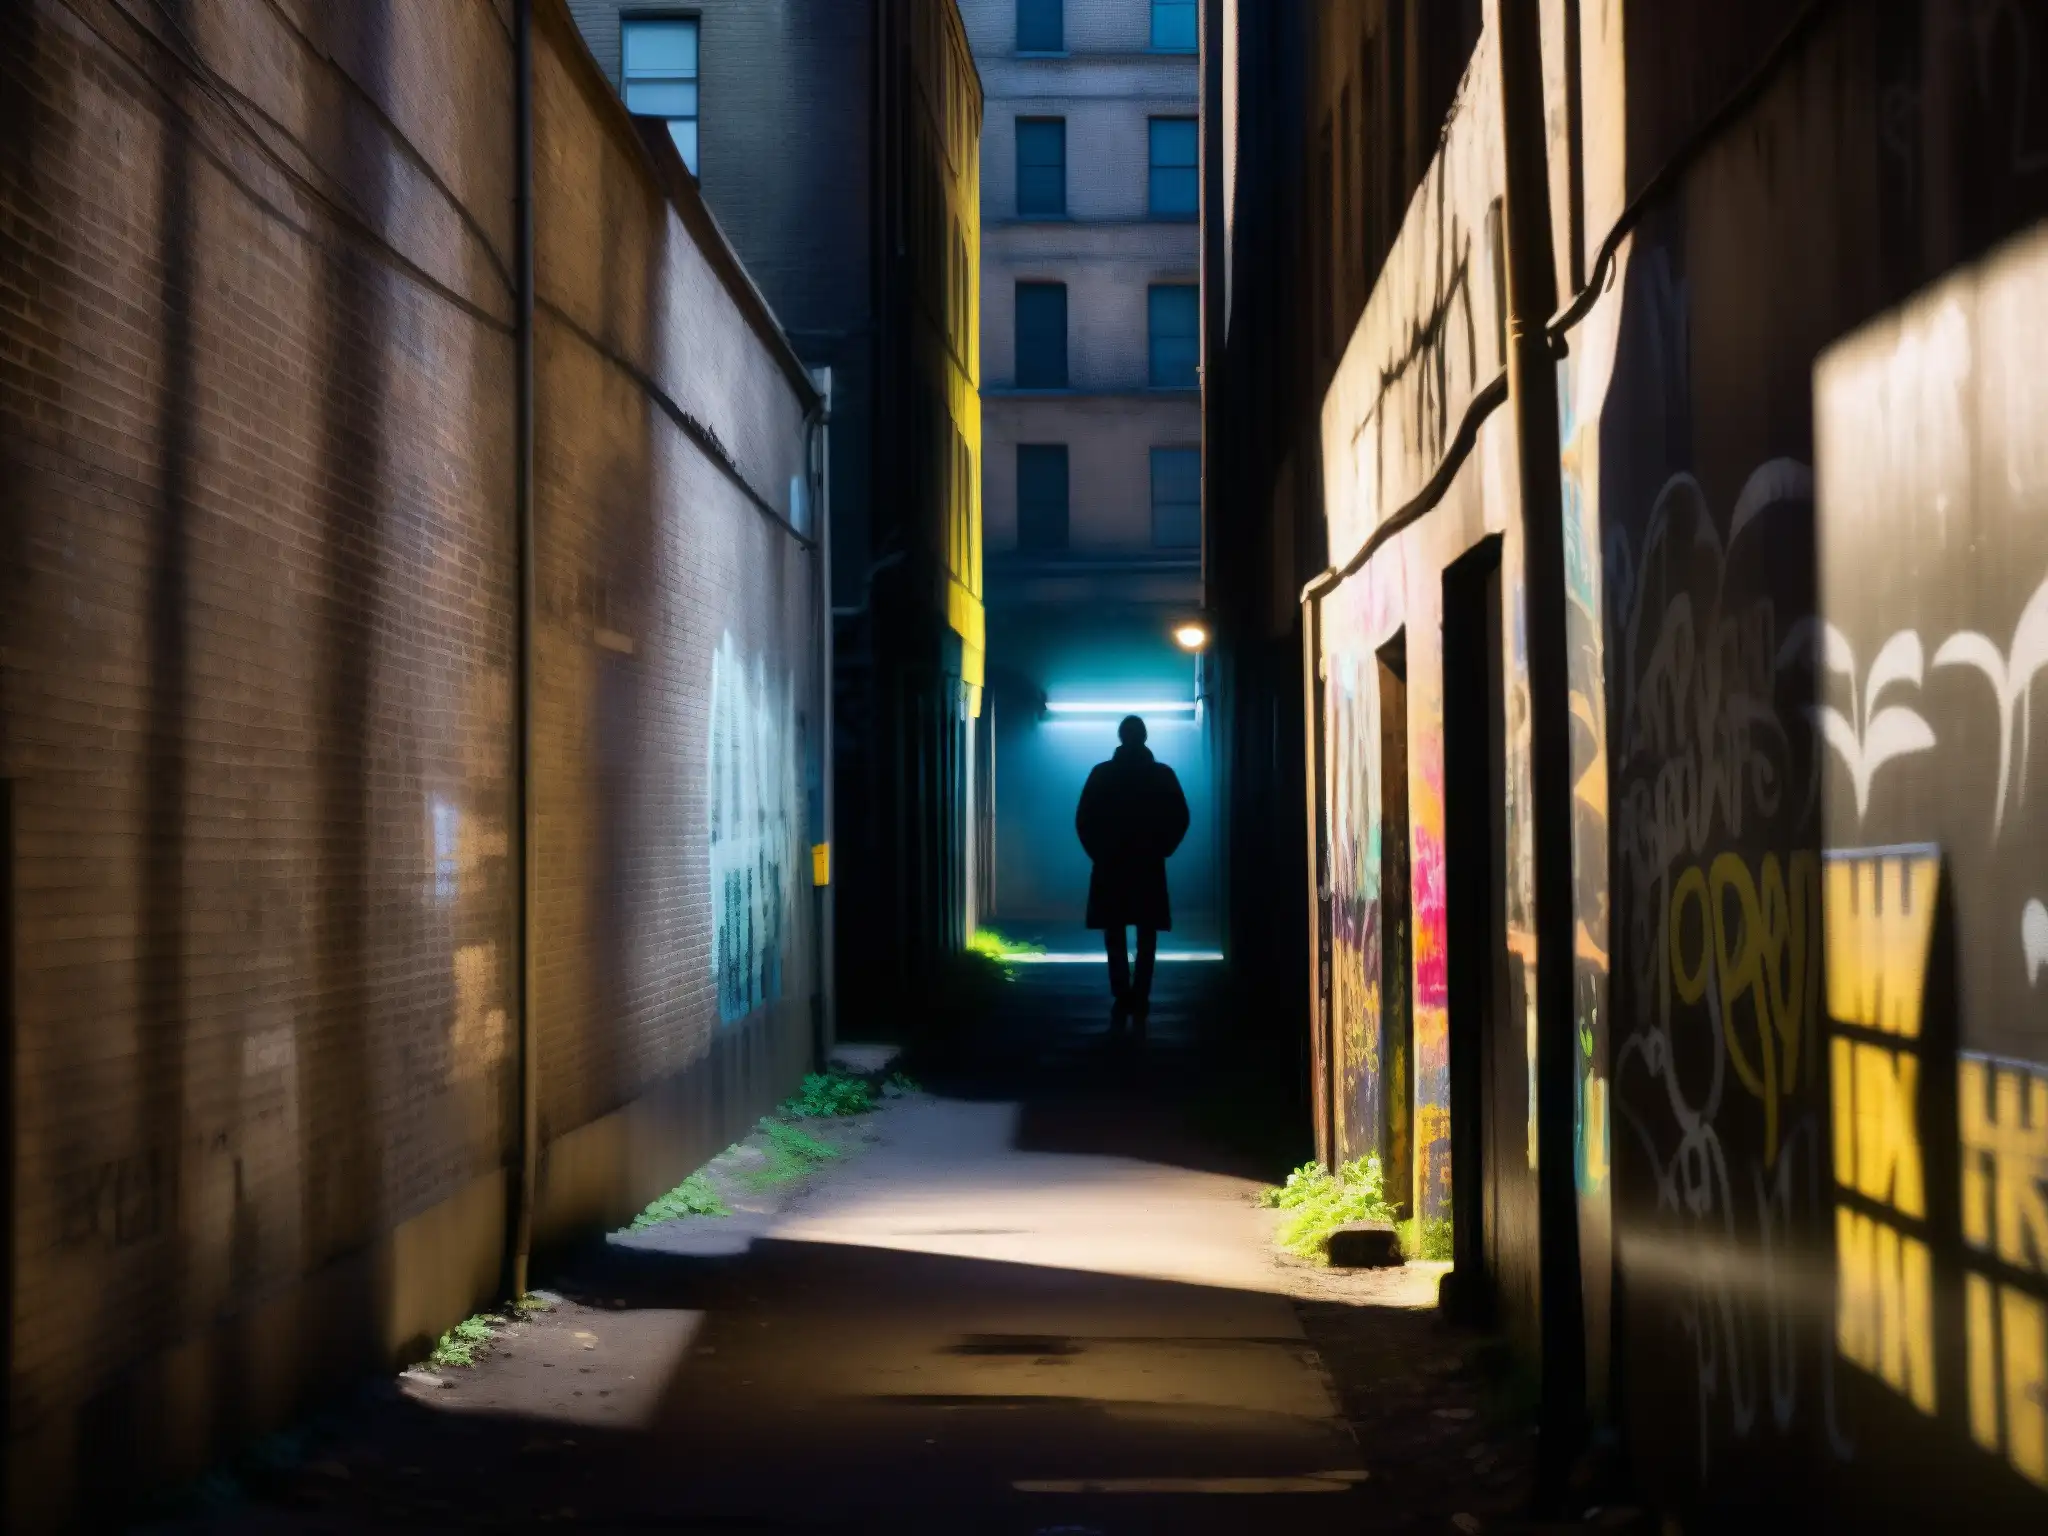 Una misteriosa y decadente callejuela urbana, con grafitis y sombras inquietantes